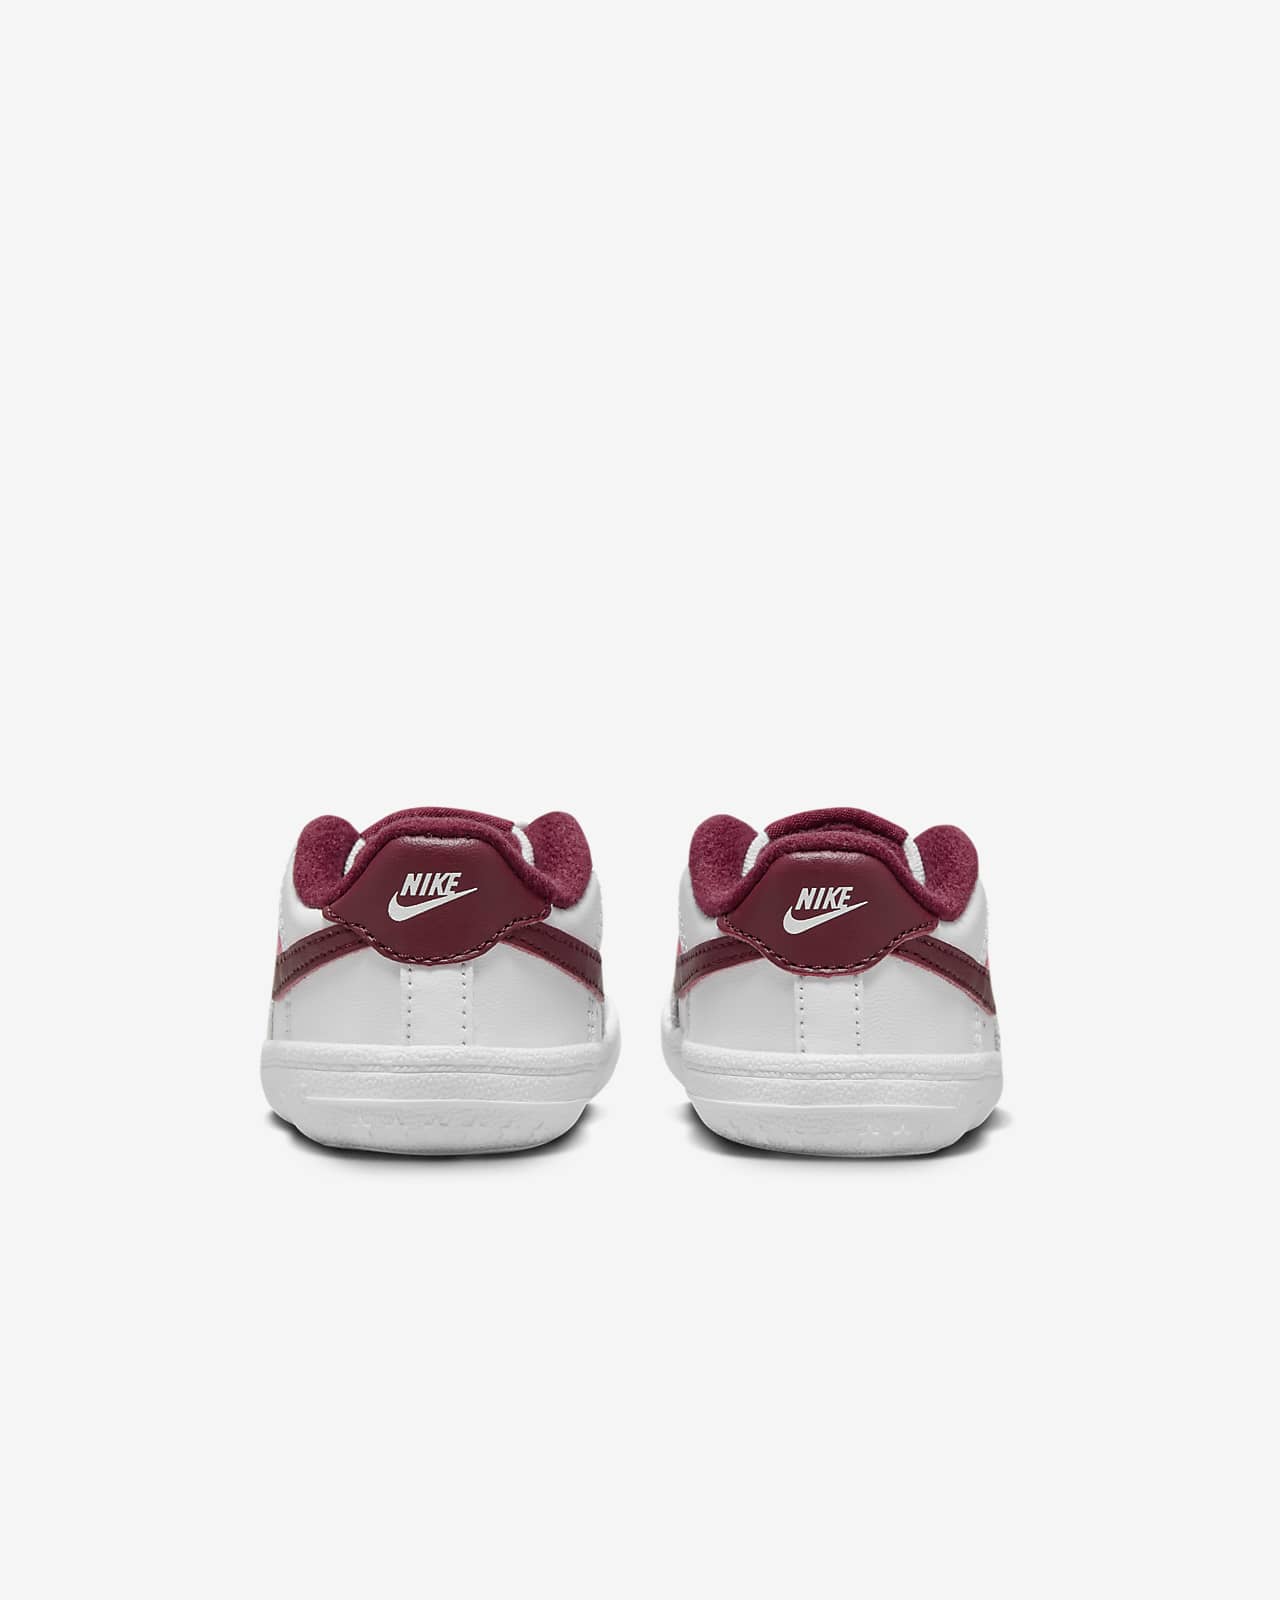 Chausson Nike Force 1 Crib pour bébé